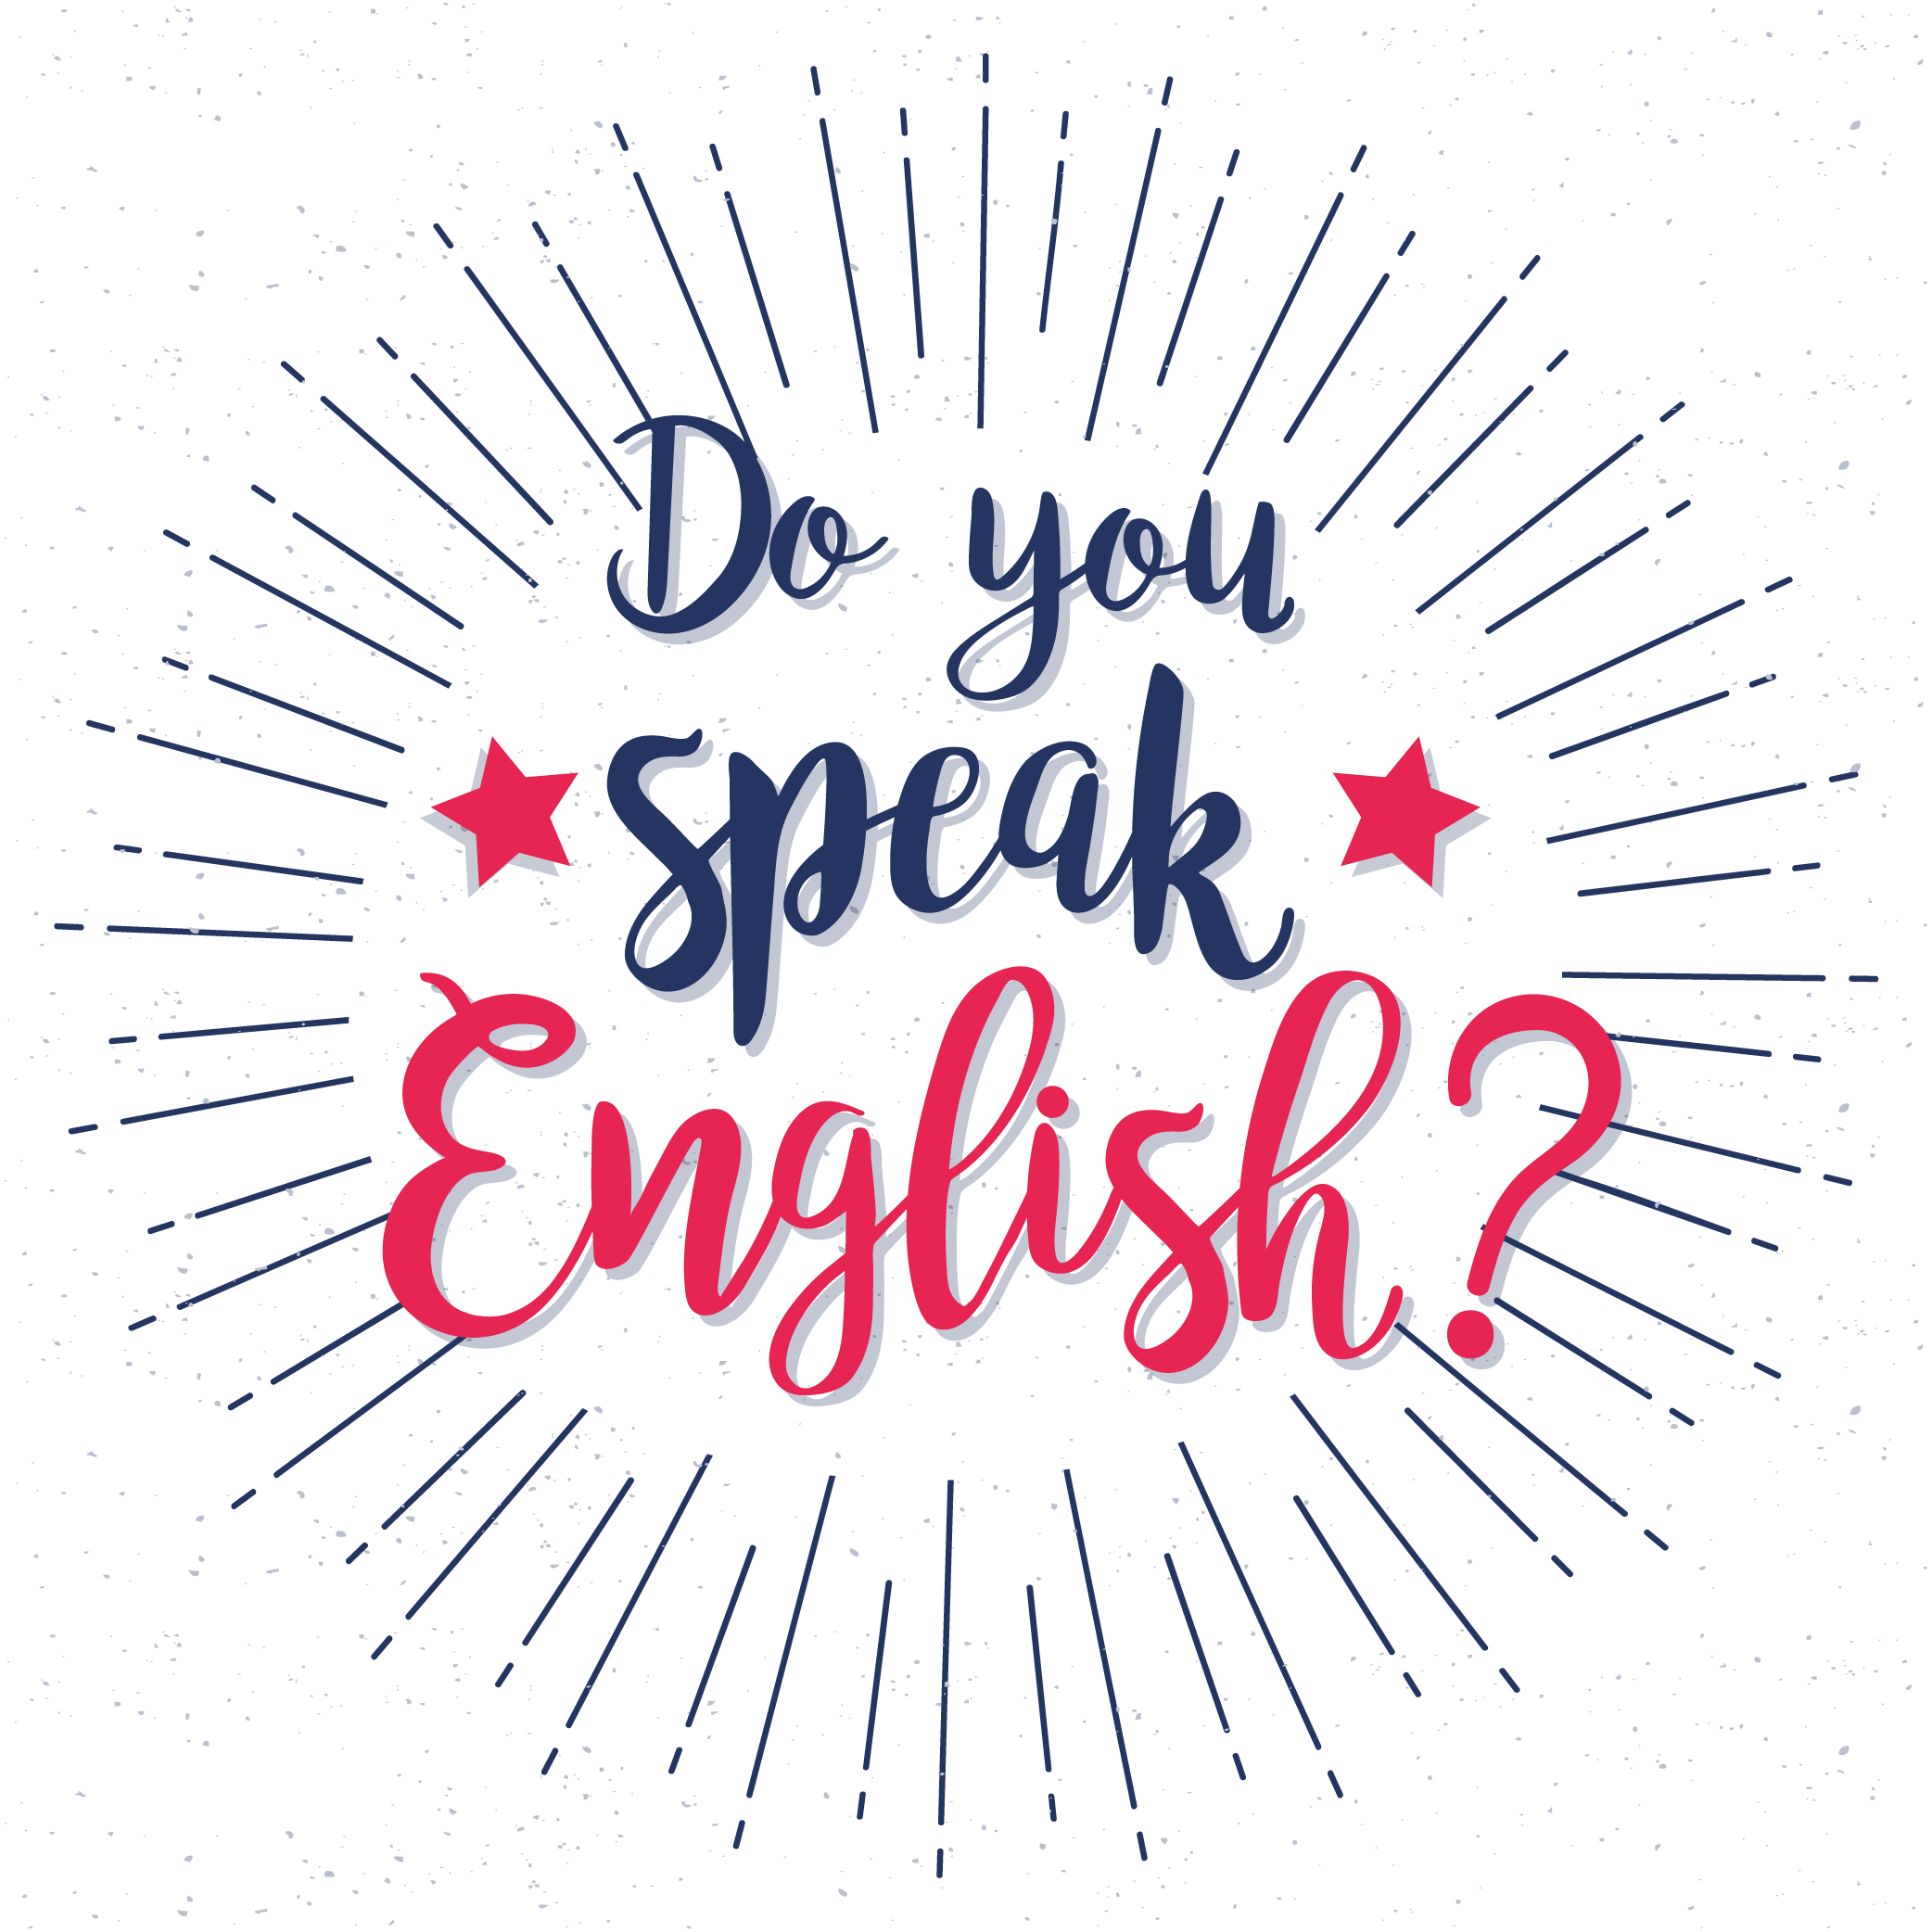 Can you speak english now. Do you speak English надпись. Do you speak English картинки. Do you speak English фон. Плакат do you speak English.